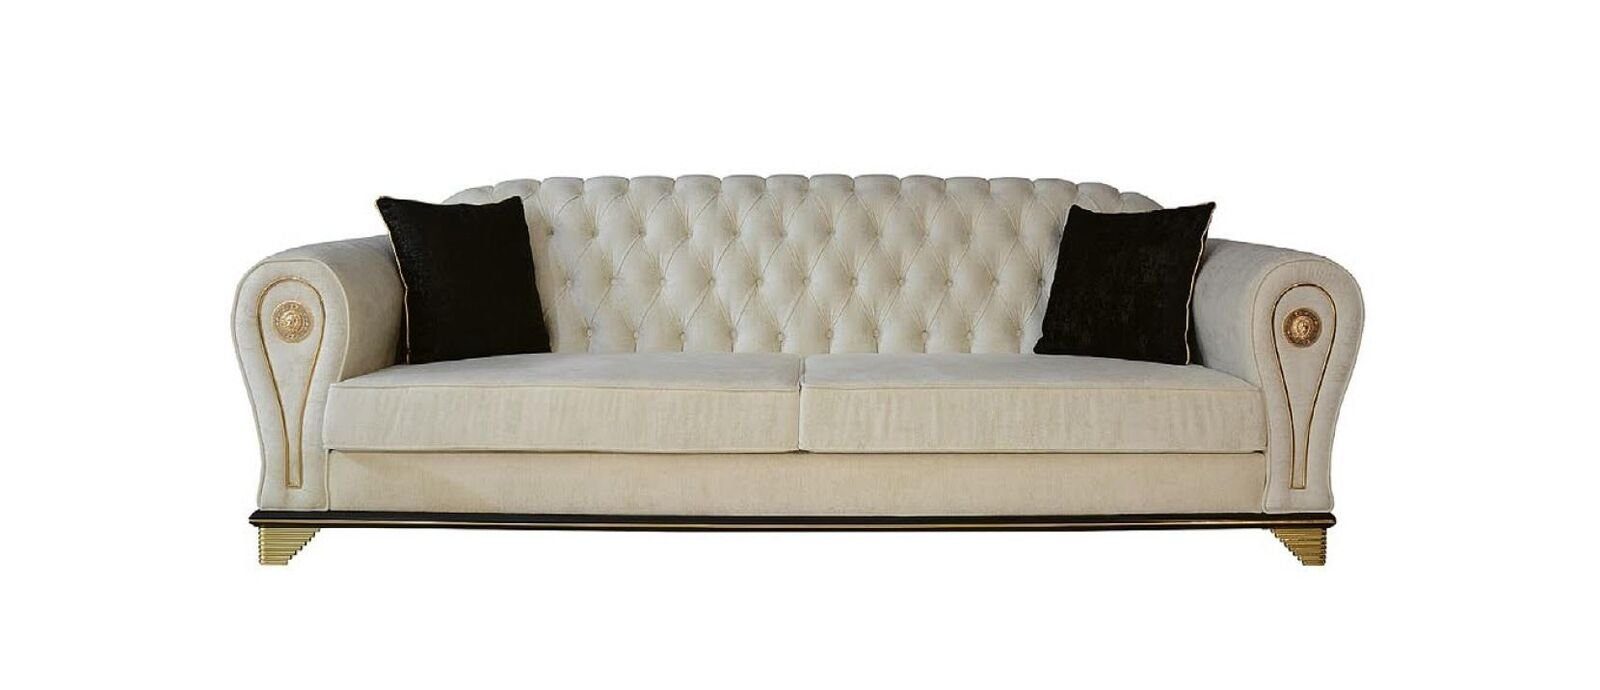 JVmoebel Sofa, Design Sofa 3-Sitzer weiß Chesterfield Stoff Sofabezug Textil | Alle Sofas